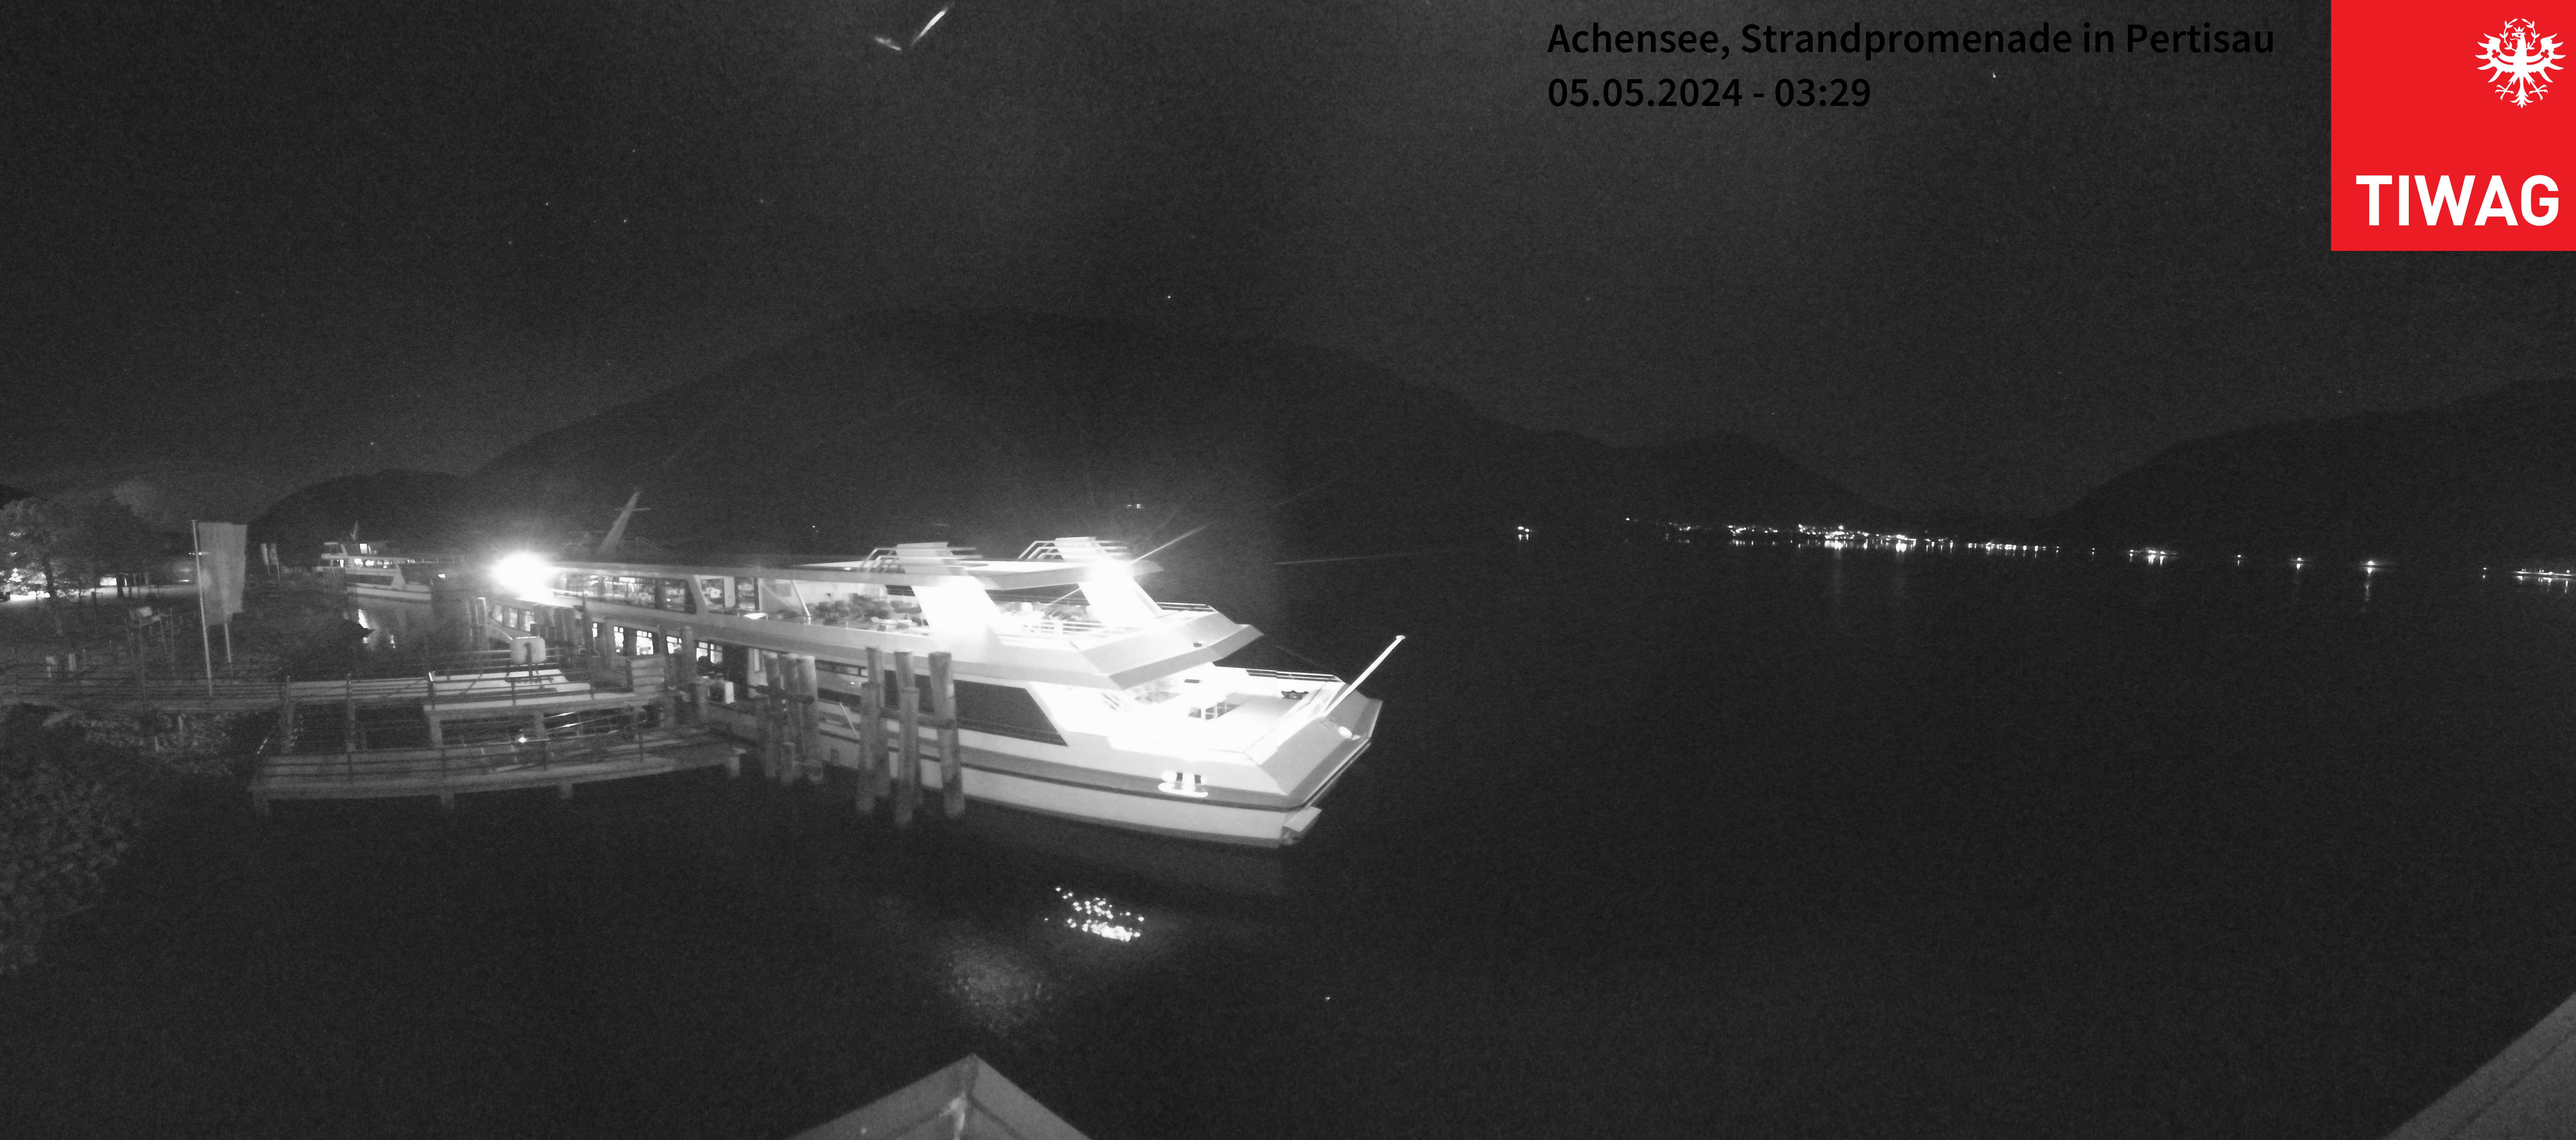 Webcam der TIWAG in Pertisau am Achensee mit Blick nach Achenkirch im Norden des Achensees